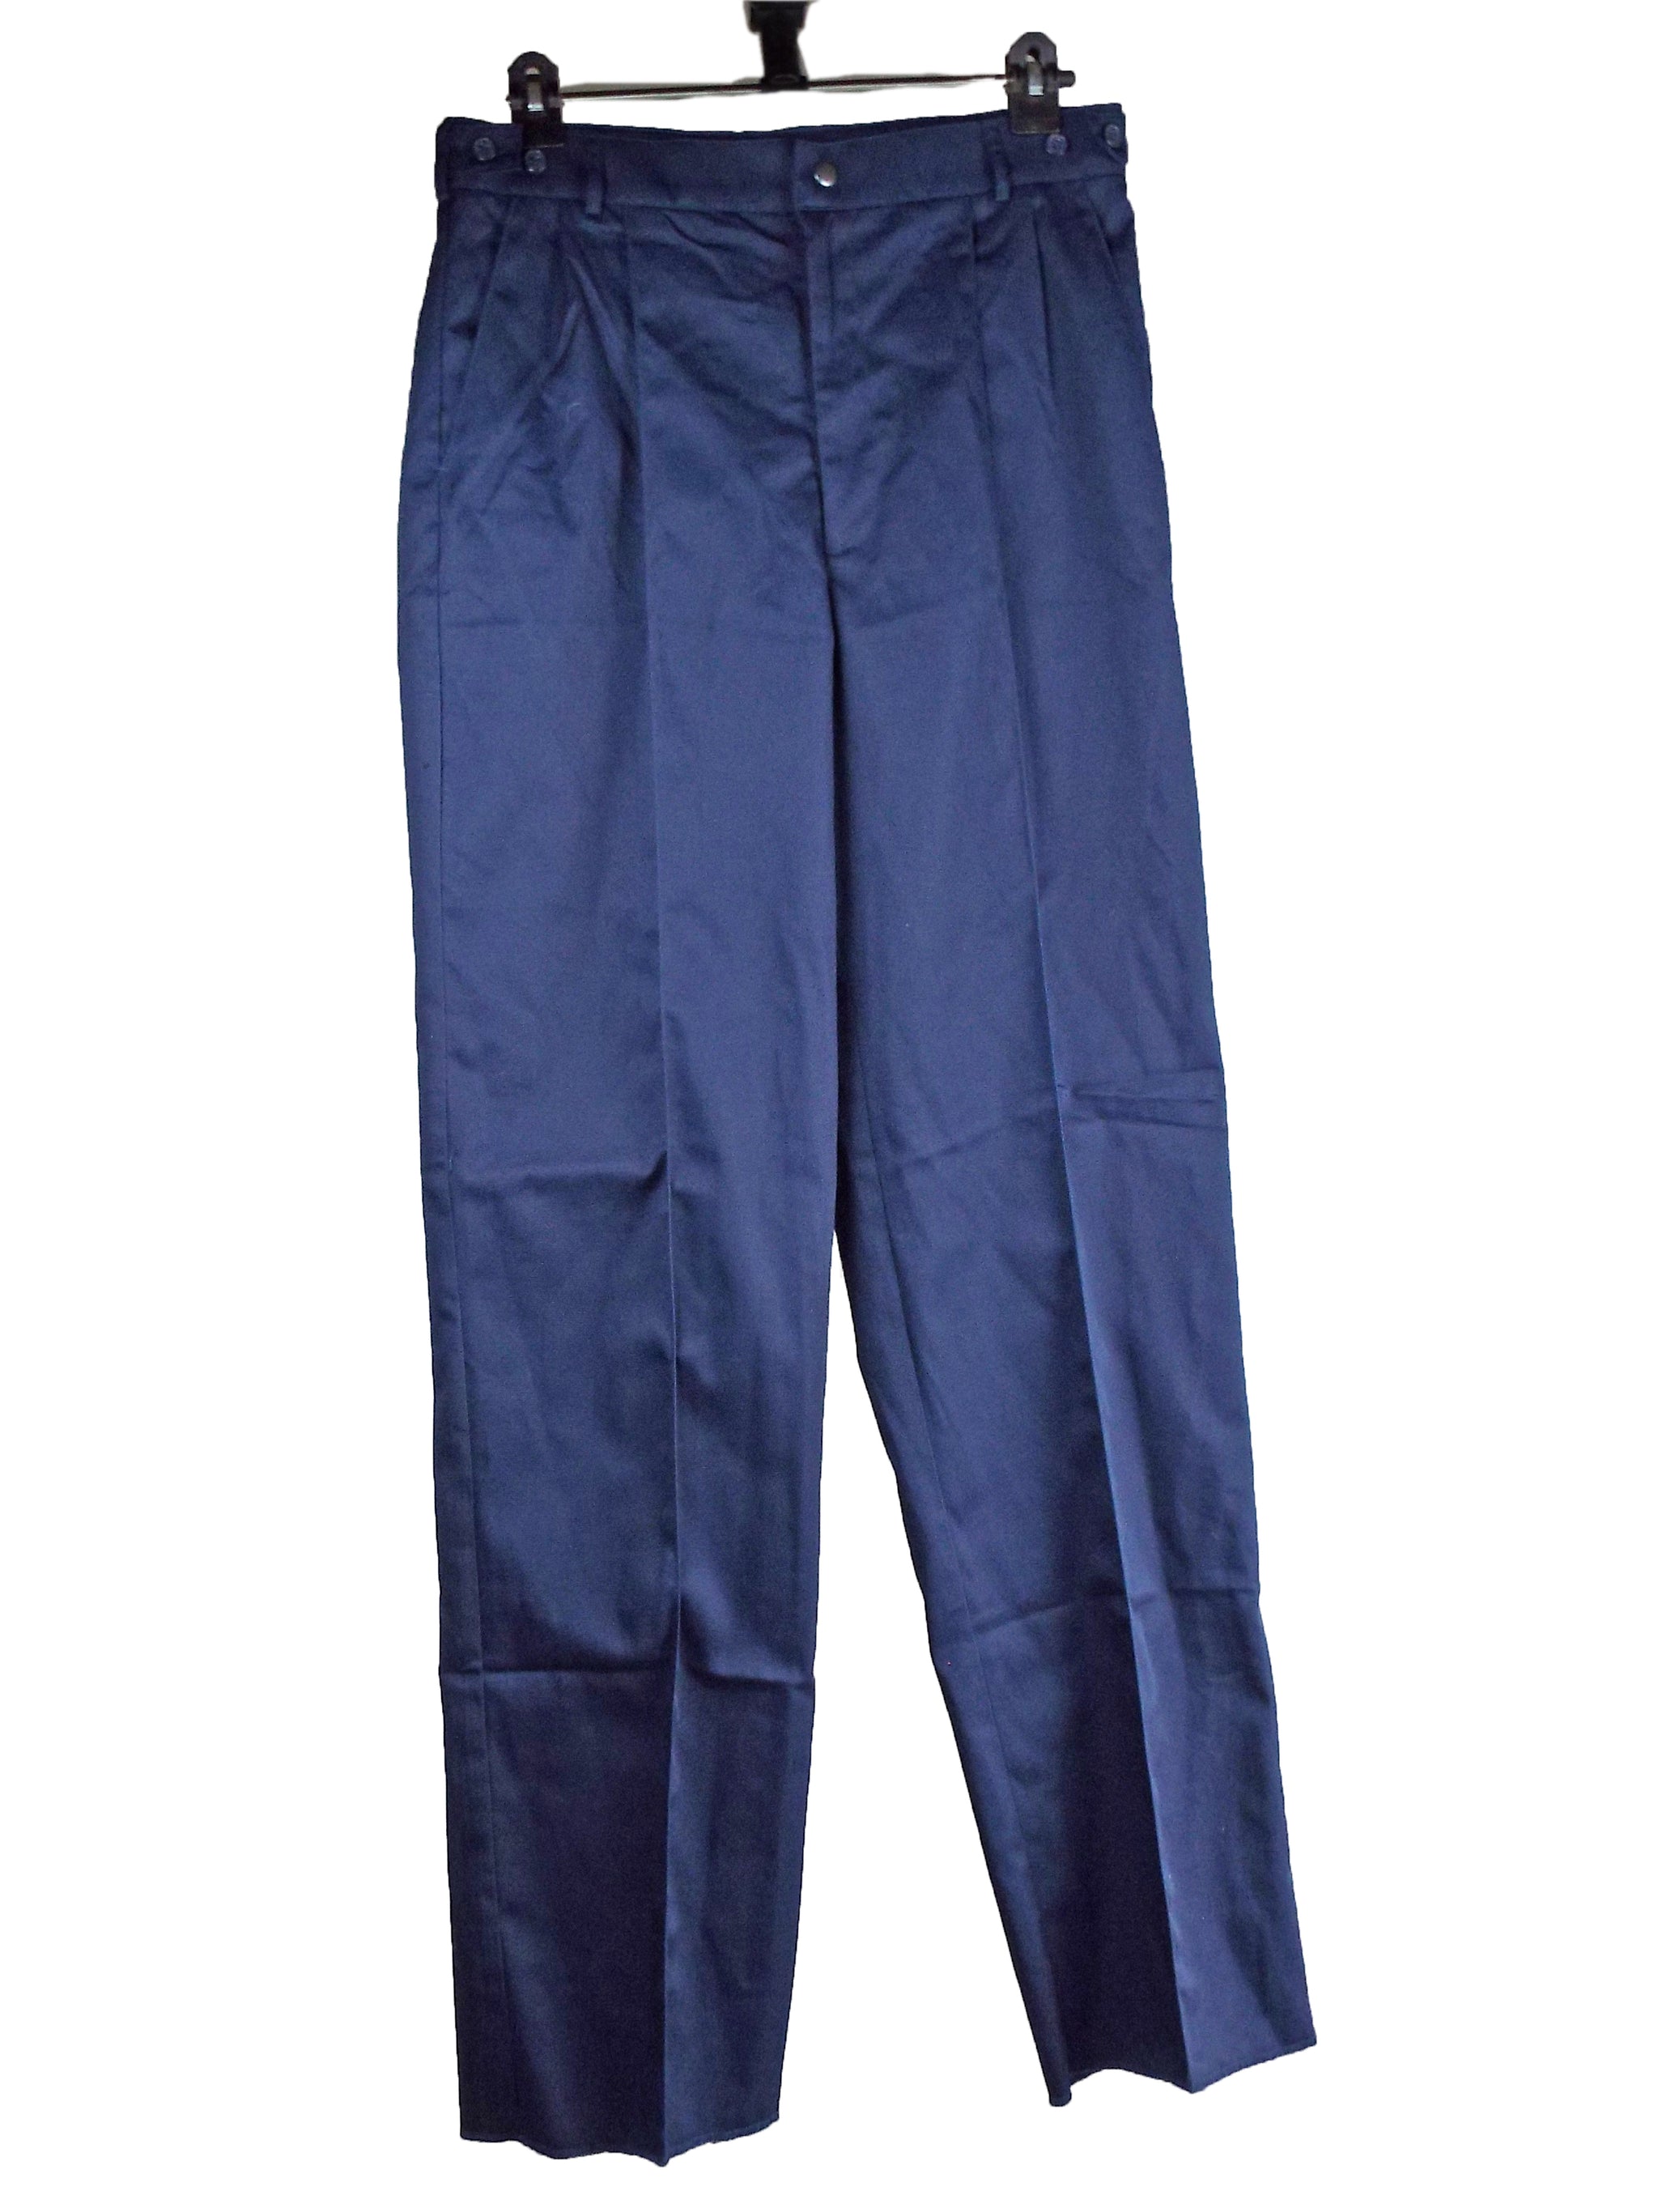 NHS Nurses - Men's Trousers - Super Grade - RAR - Forces Uniform and Kit